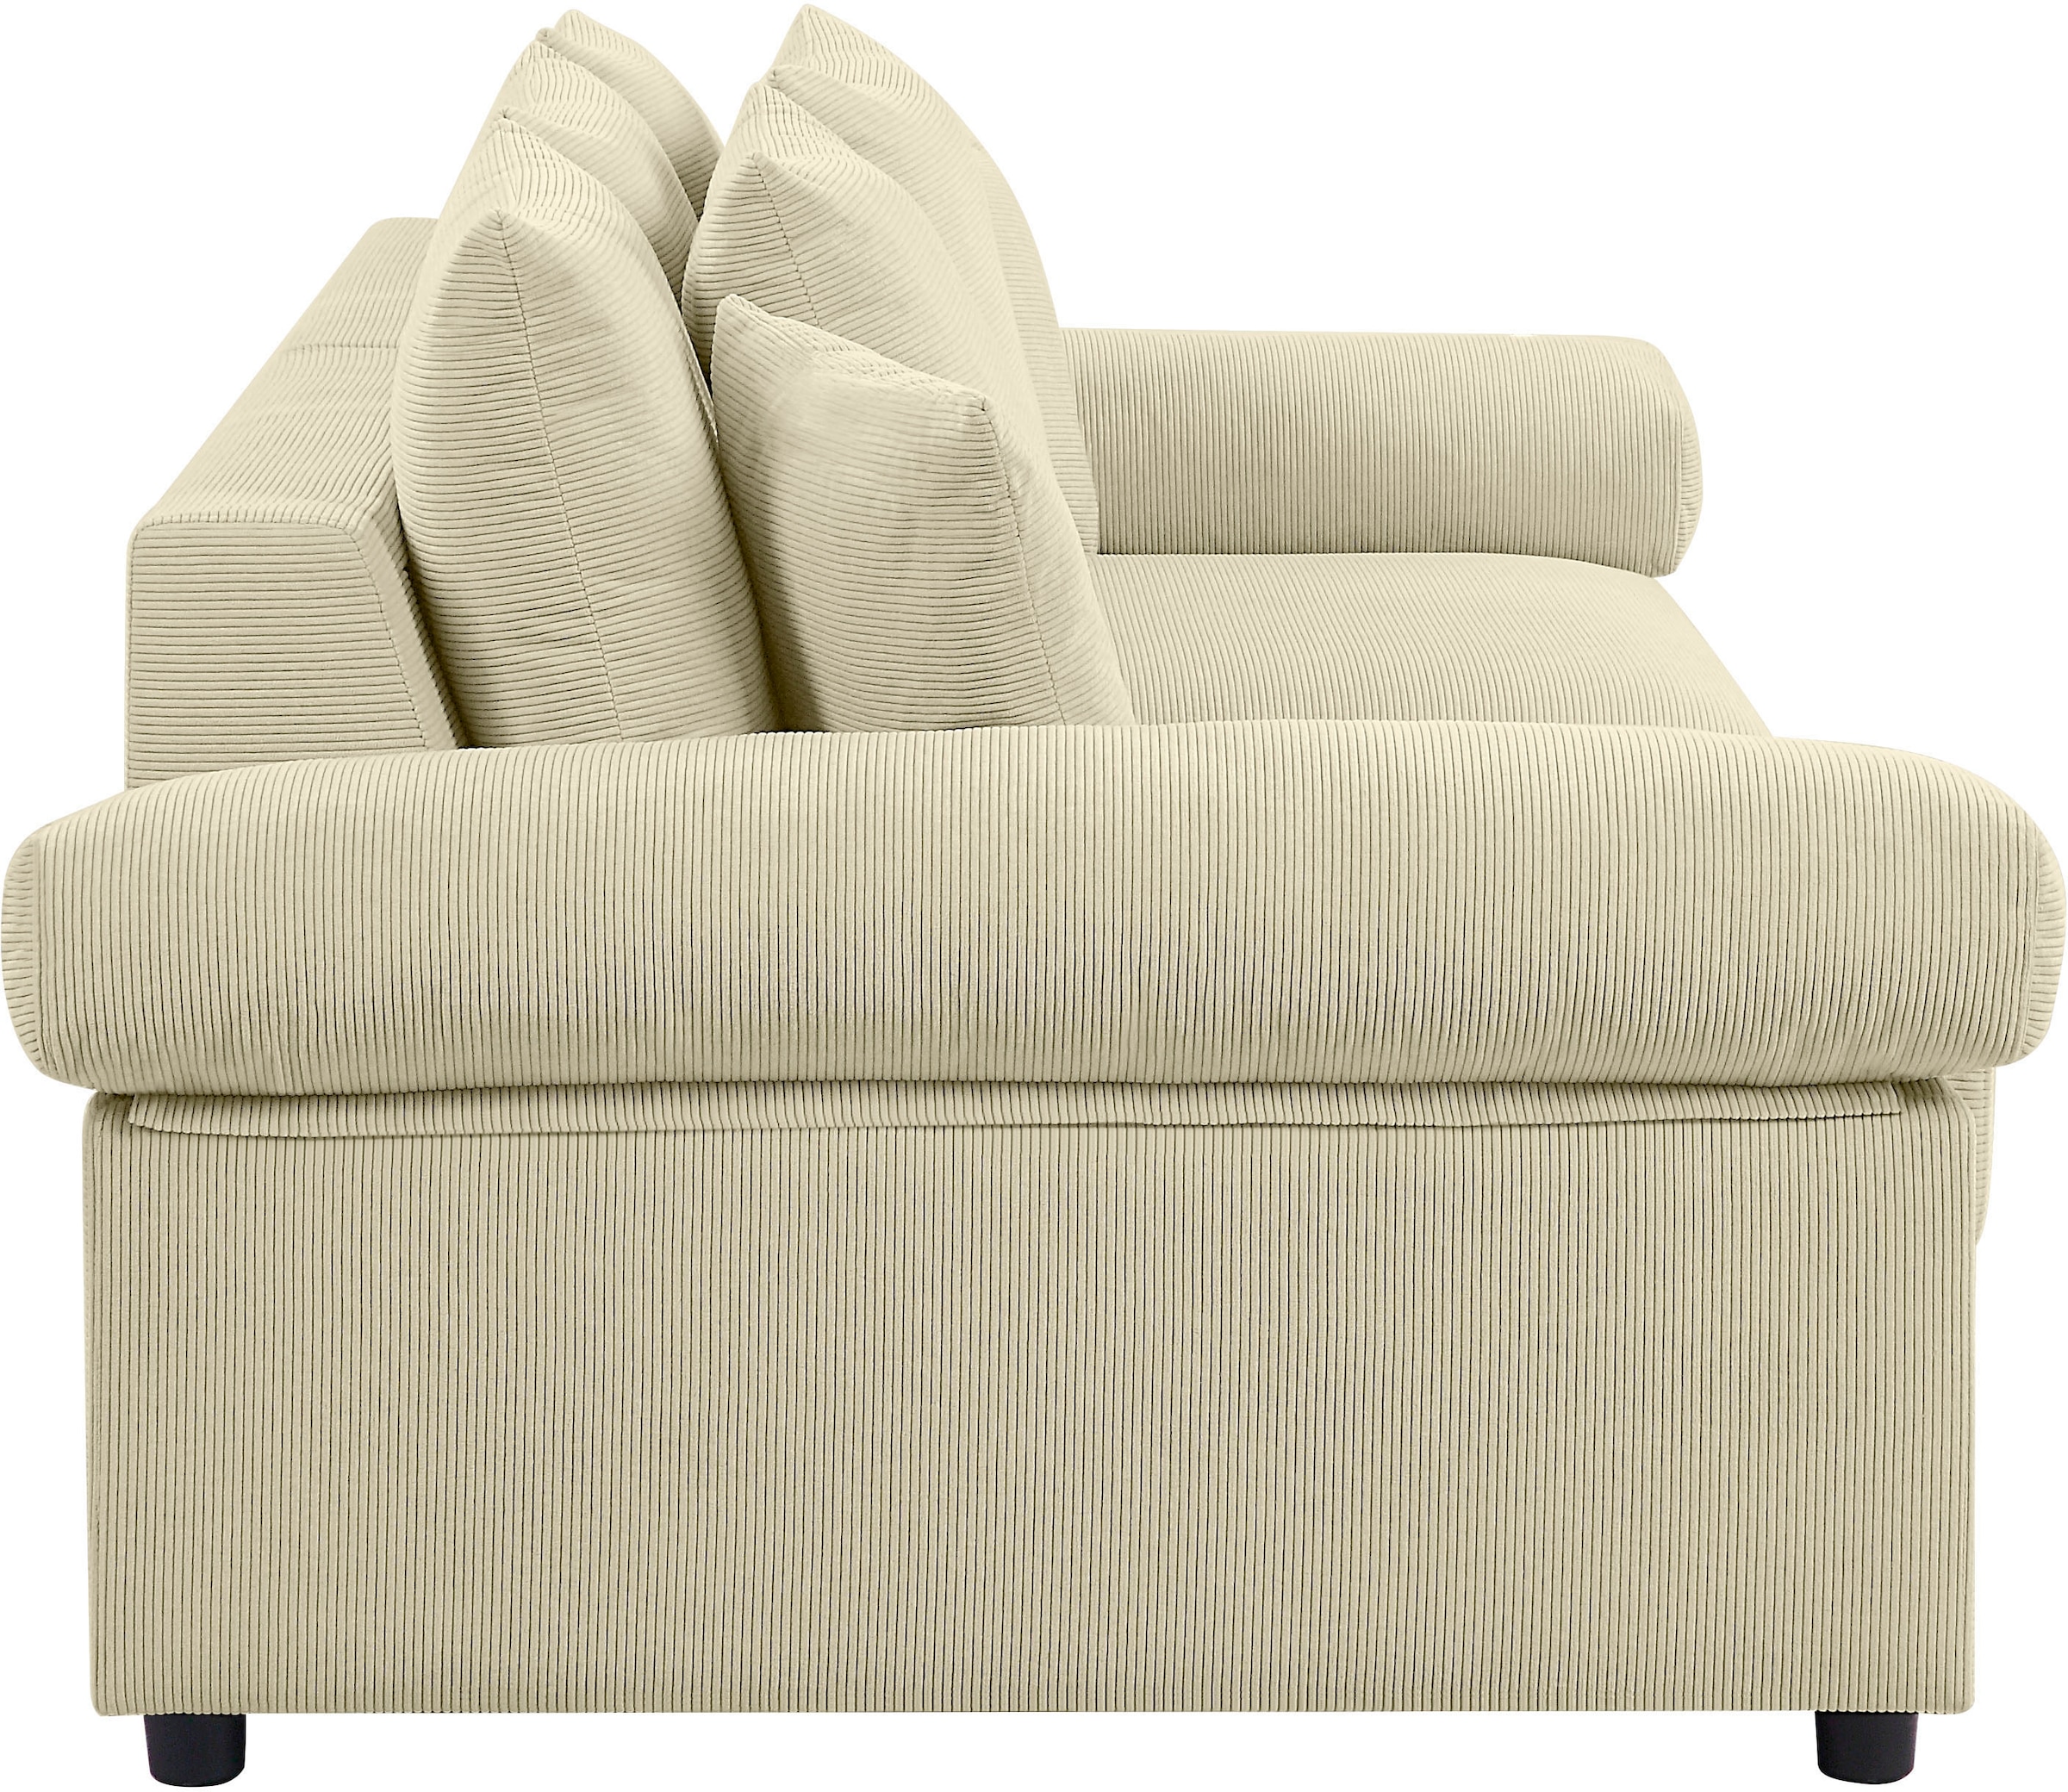 ATLANTIC home collection Big-Sofa »Bjoern«, Federkern, XXL-Sitzfläche, Cord-Bezug, kaufen auf mit stellbar frei mit im Rechnung Raum